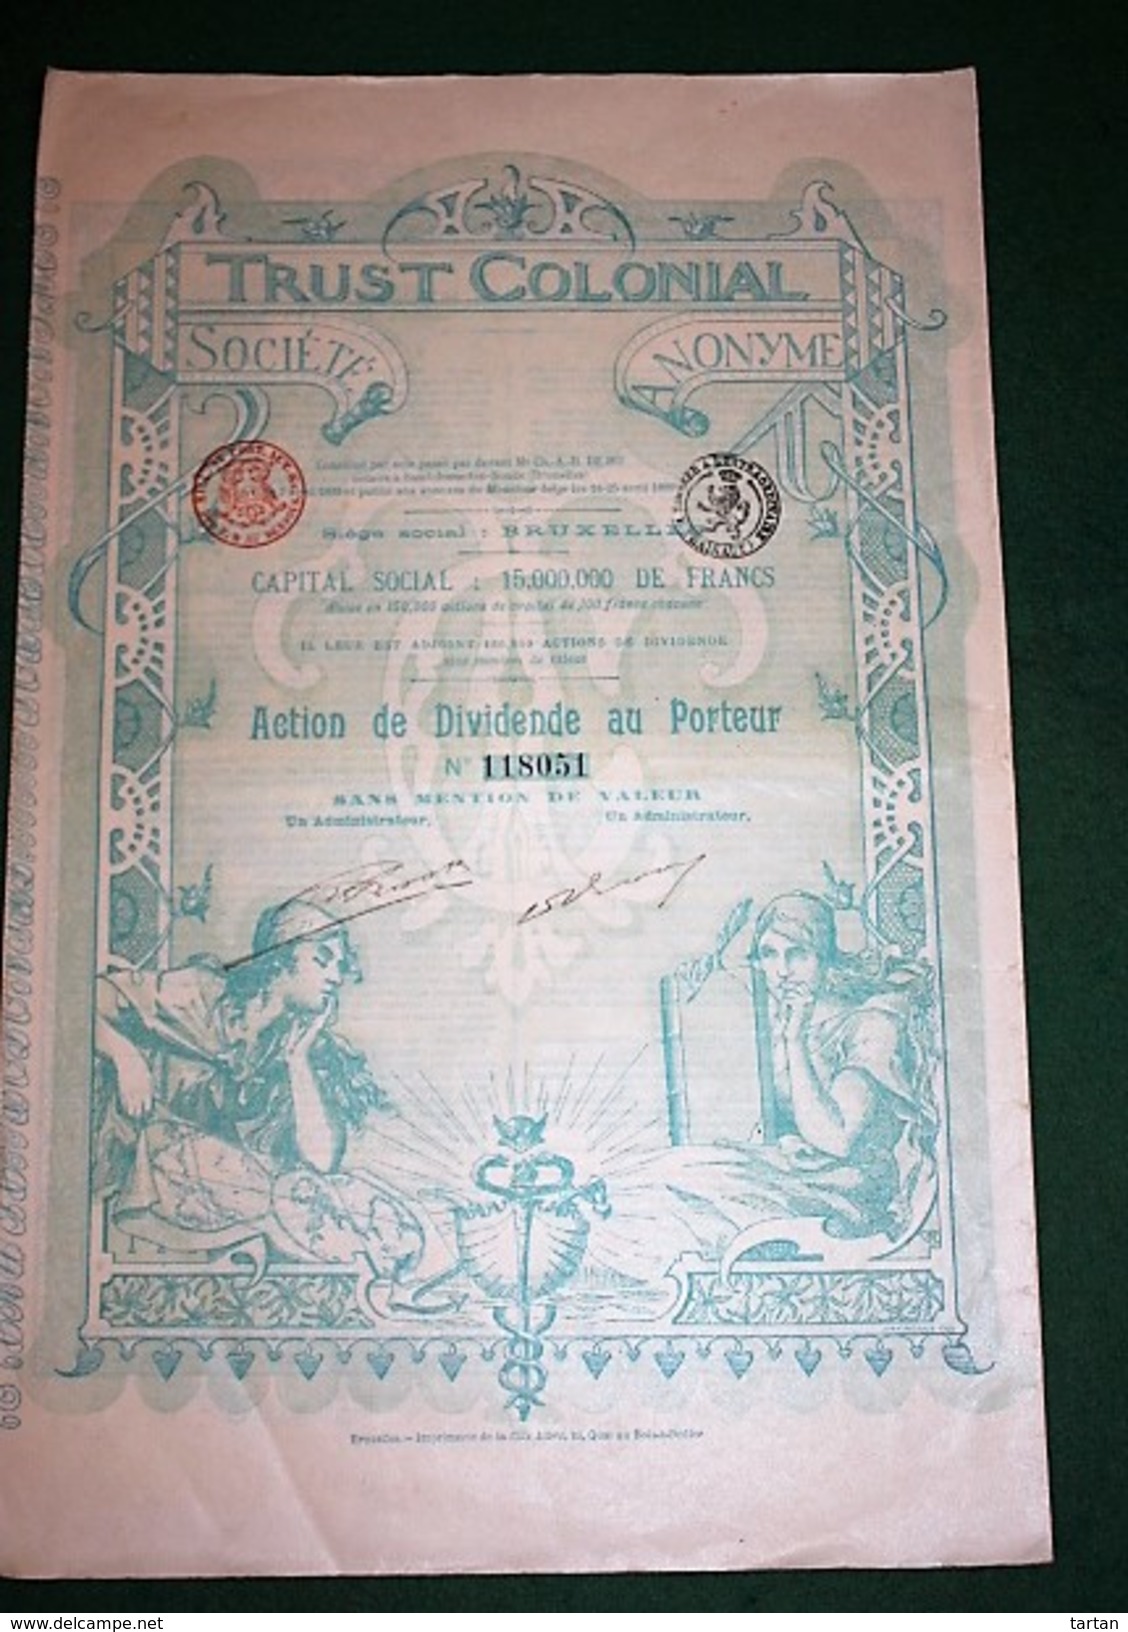 TRUST COLONIAL ACTION DE DIVIDENDE BRUXELLES 1899 - Banque & Assurance